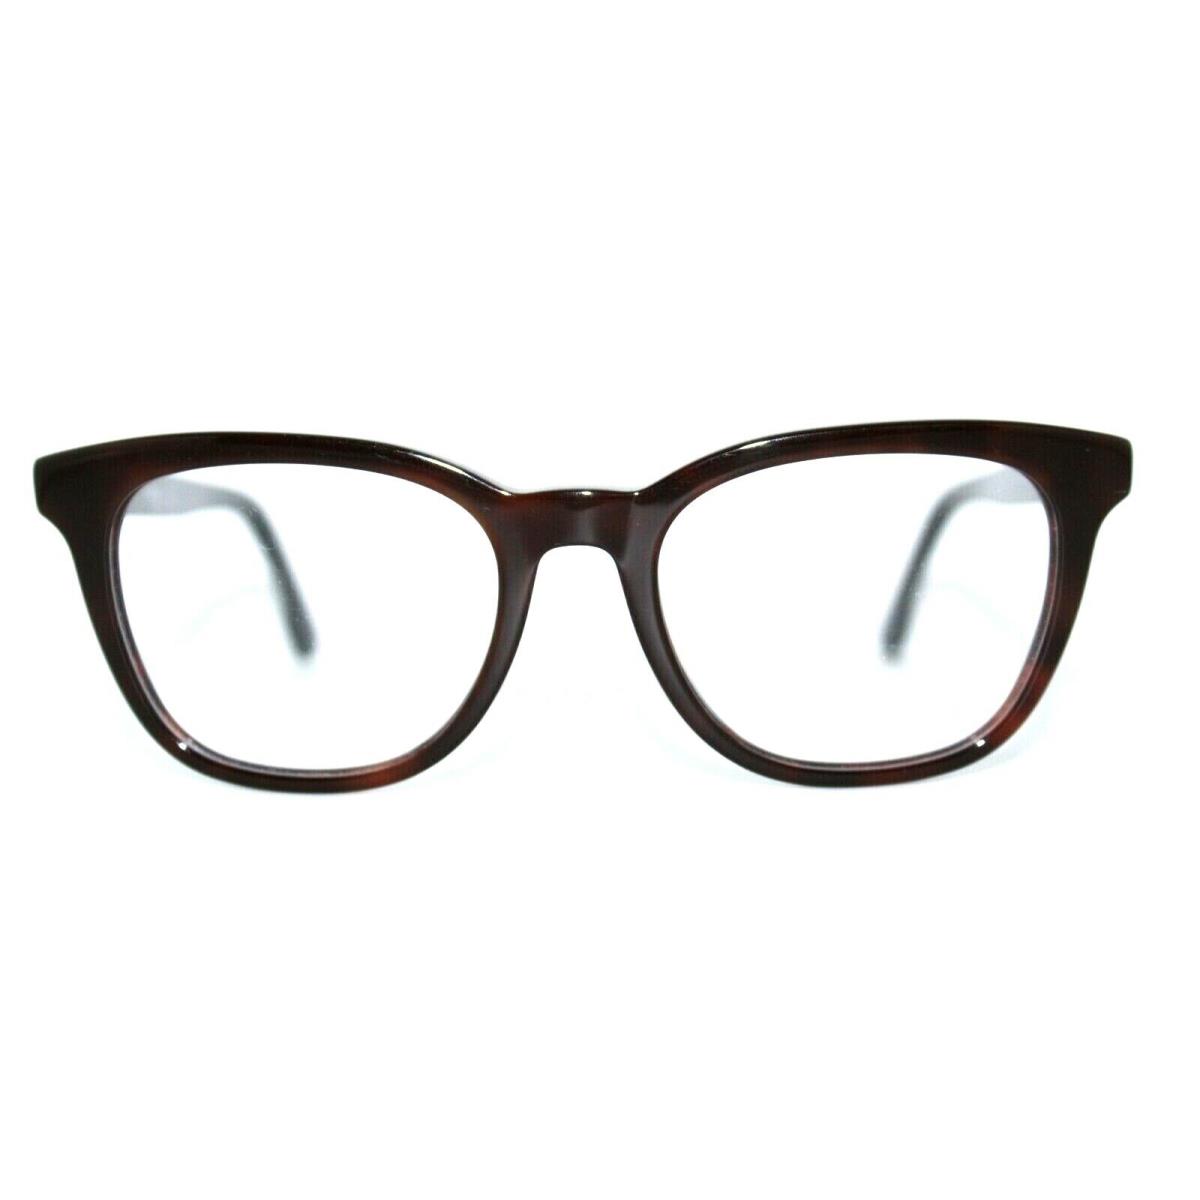 Diesel DL5205 052 Dark Havana Eyeglasses Frames 50-18-145MM W/case